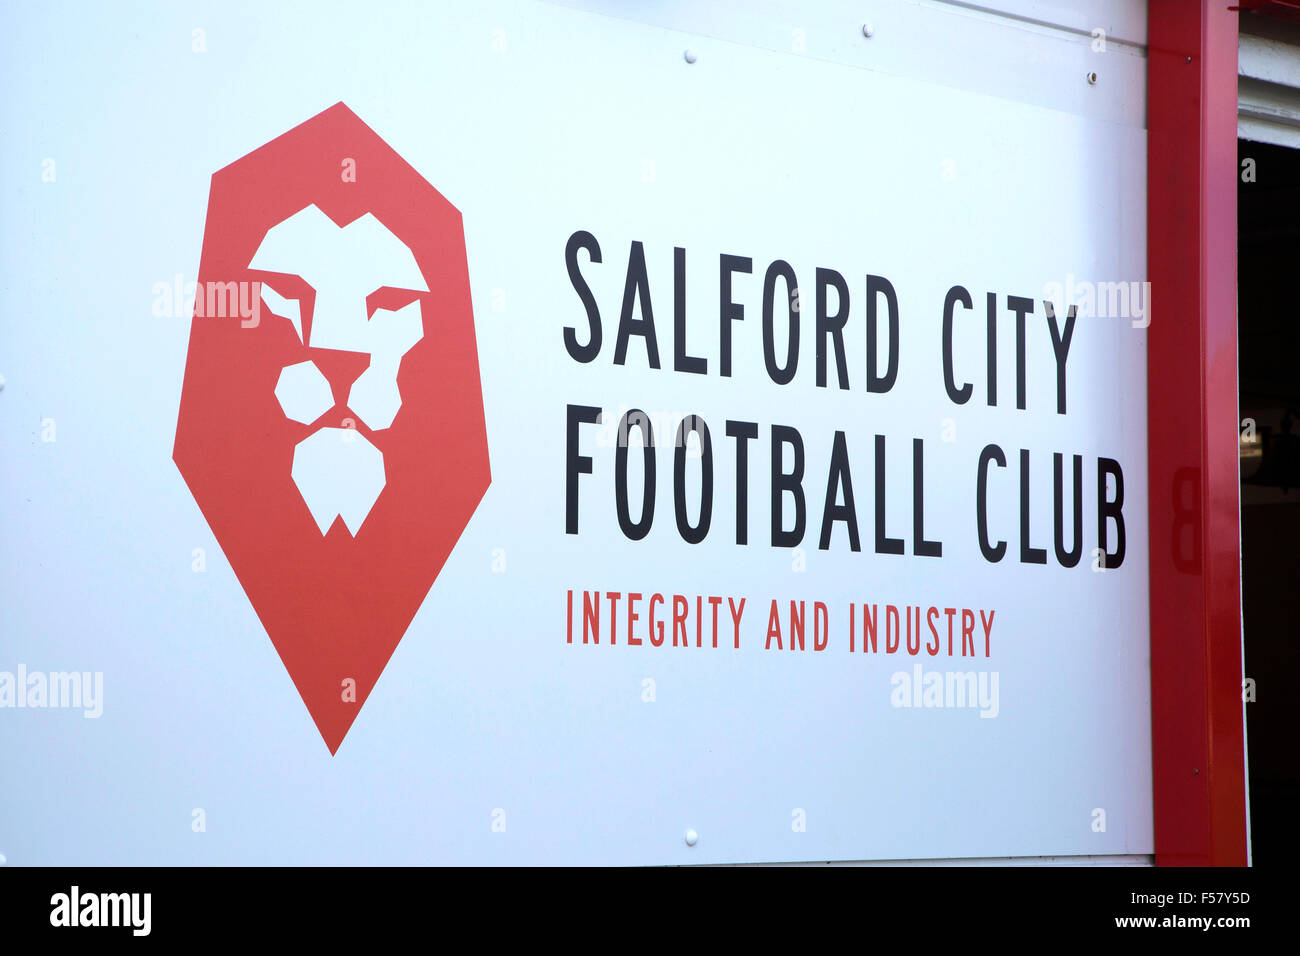 Salford City Football Club in Manchester membri della Northern Premier League Premier Division in Inghilterra Foto Stock